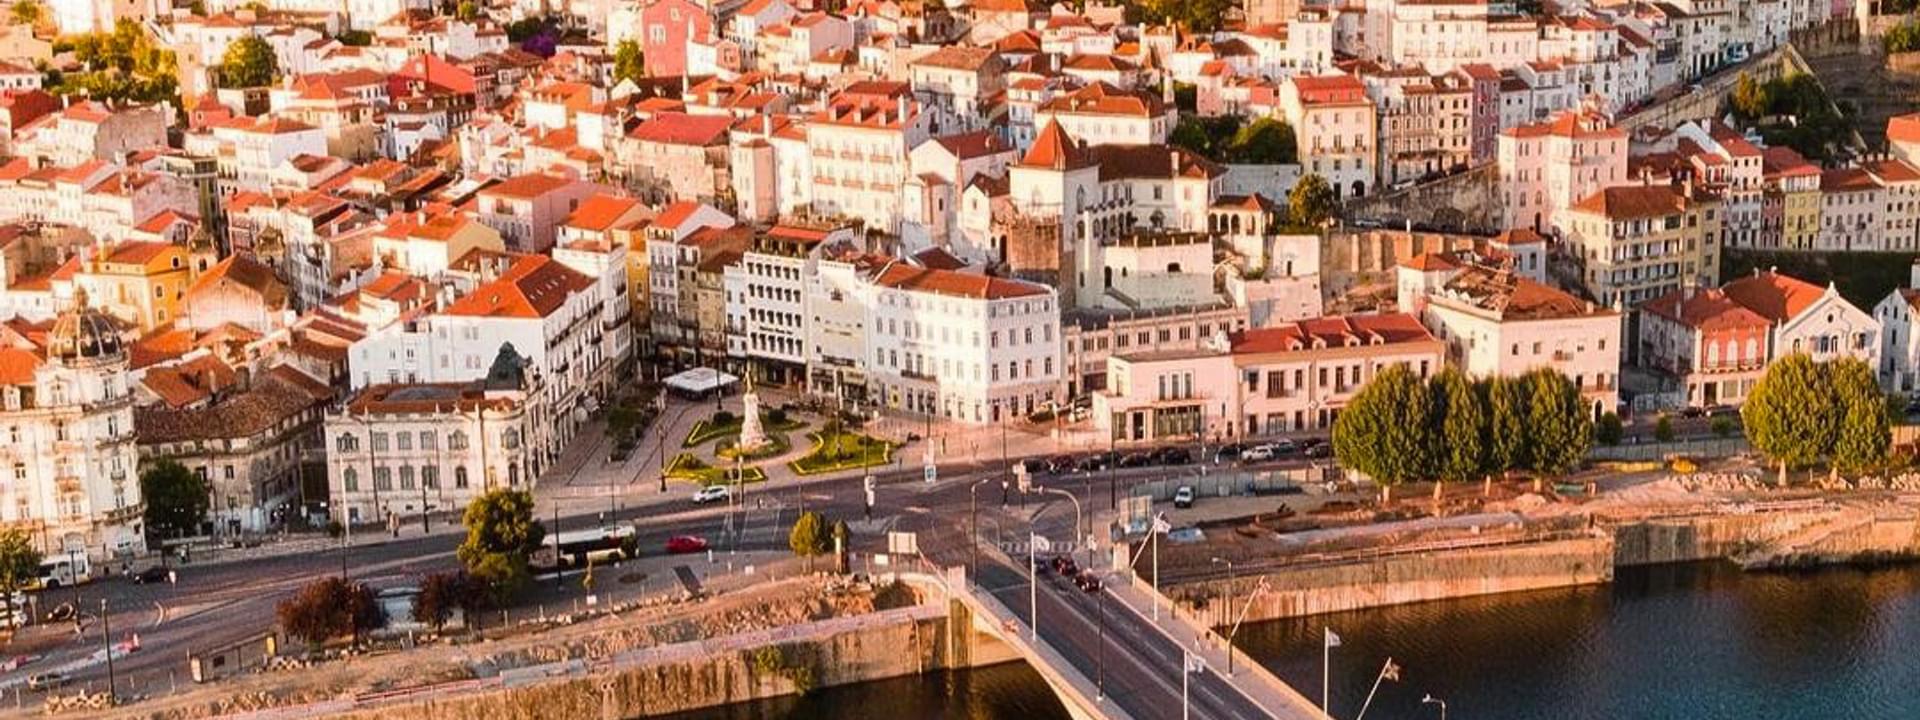 Walking Tour in Coimbra: Coimbra essentials